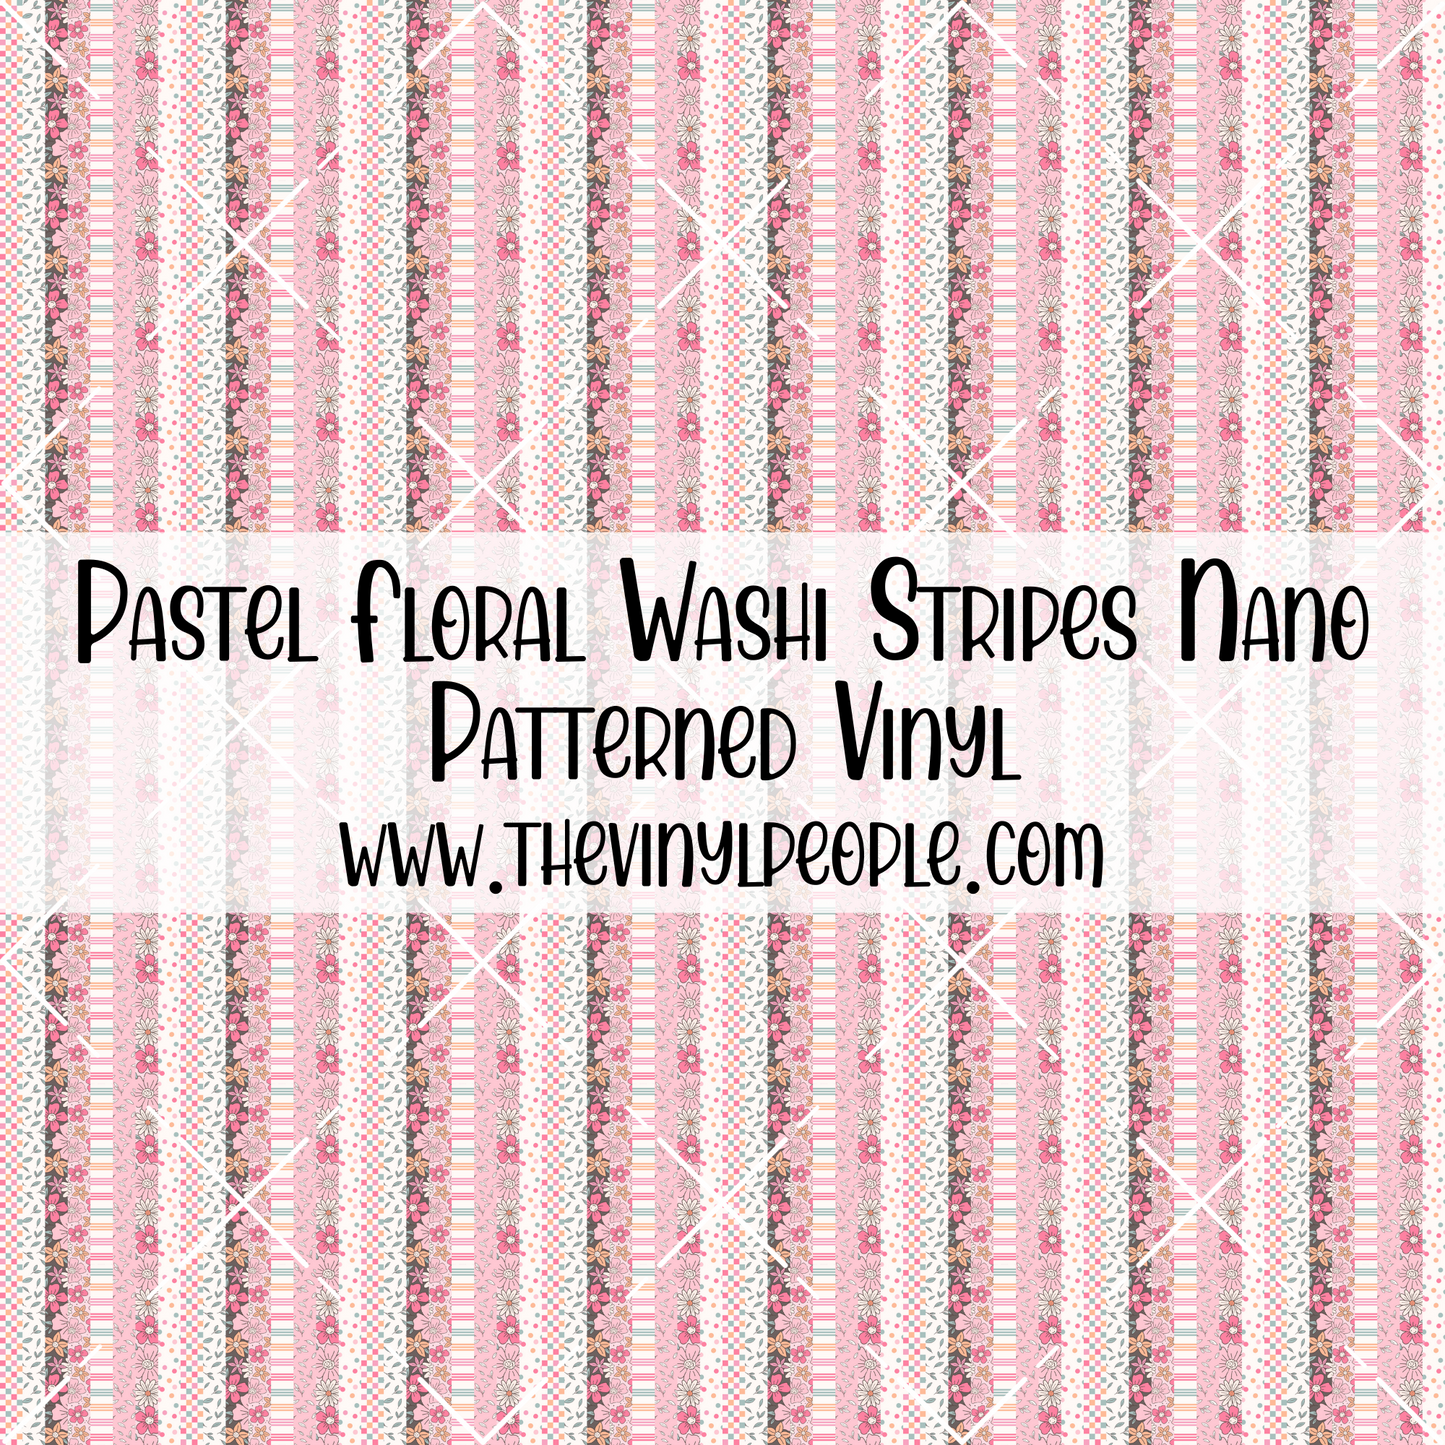 Pastel Floral Washi Stripes Patterned Vinyl